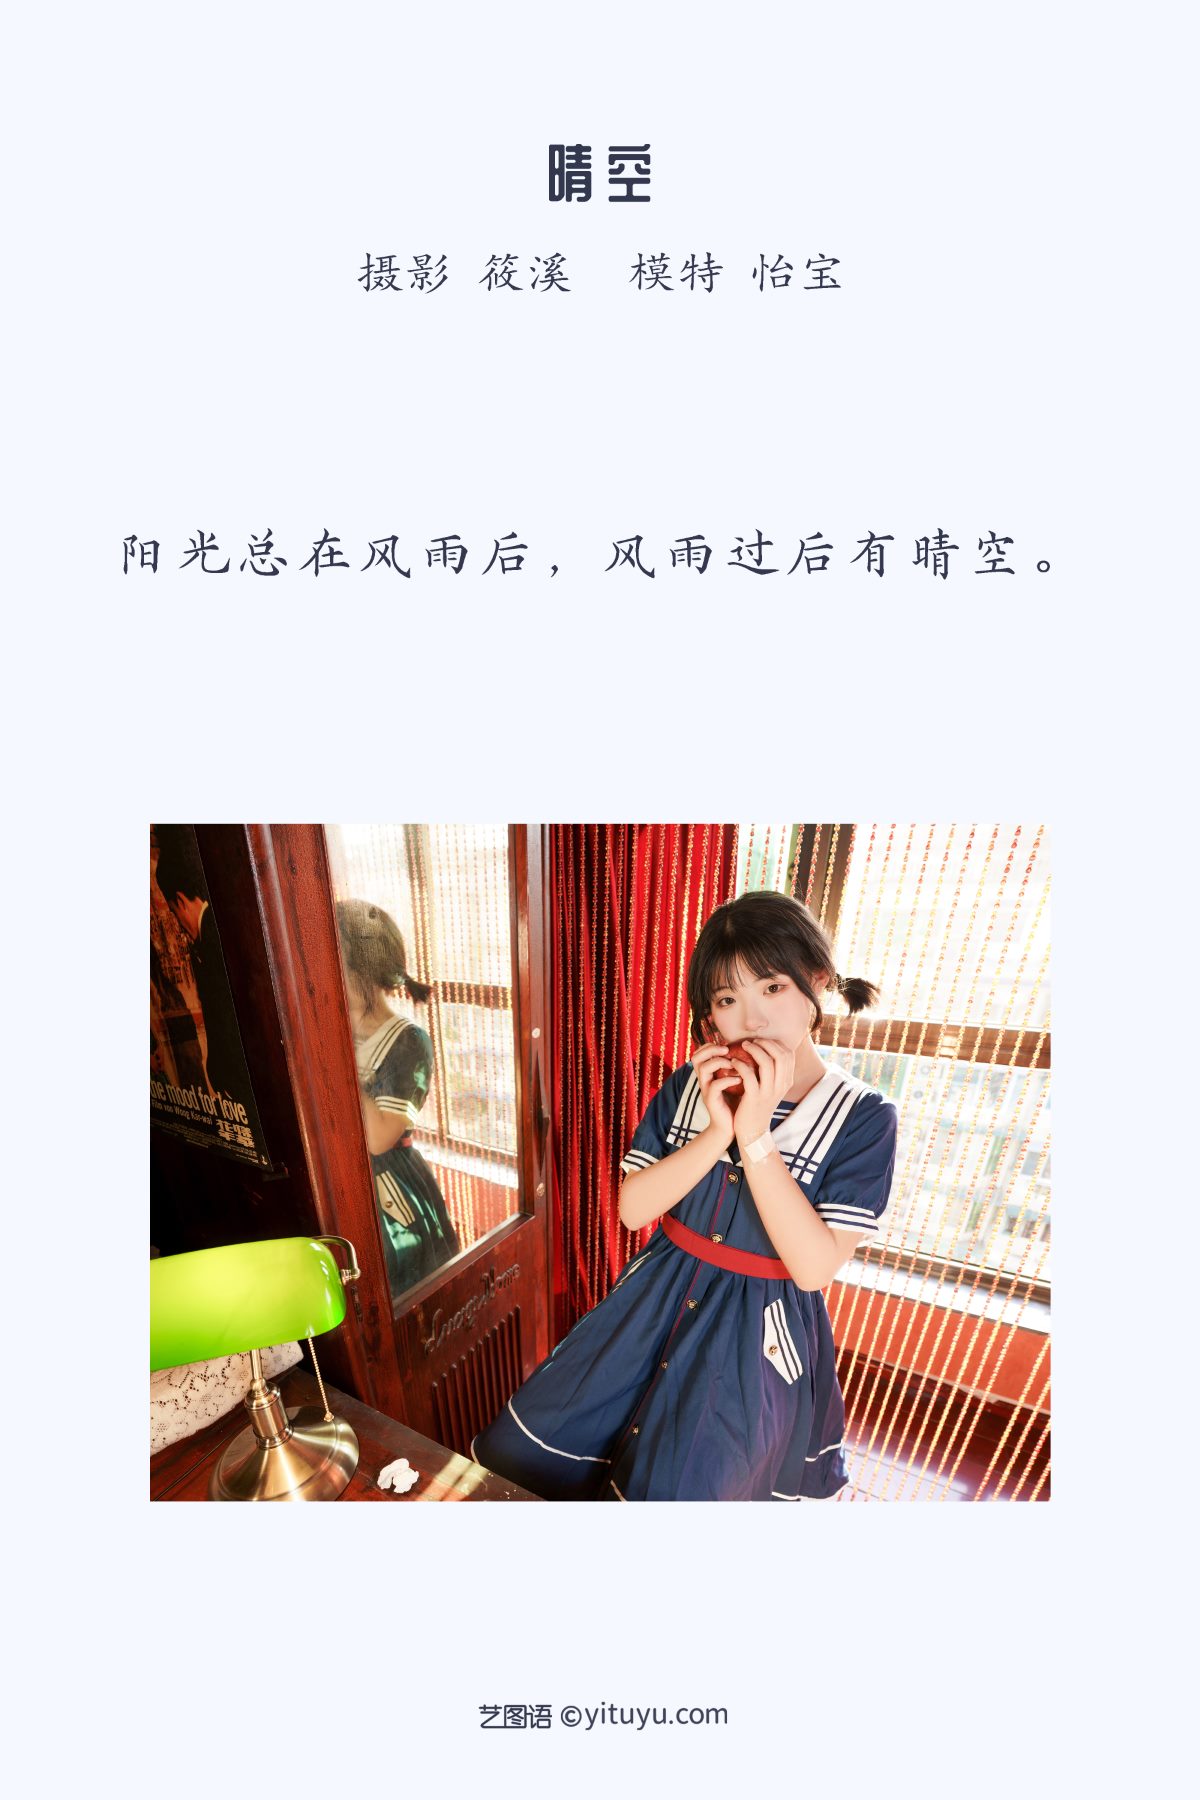 YiTuYu艺图语 Vol 1073 Yi Bao 0002 0085775897.jpg